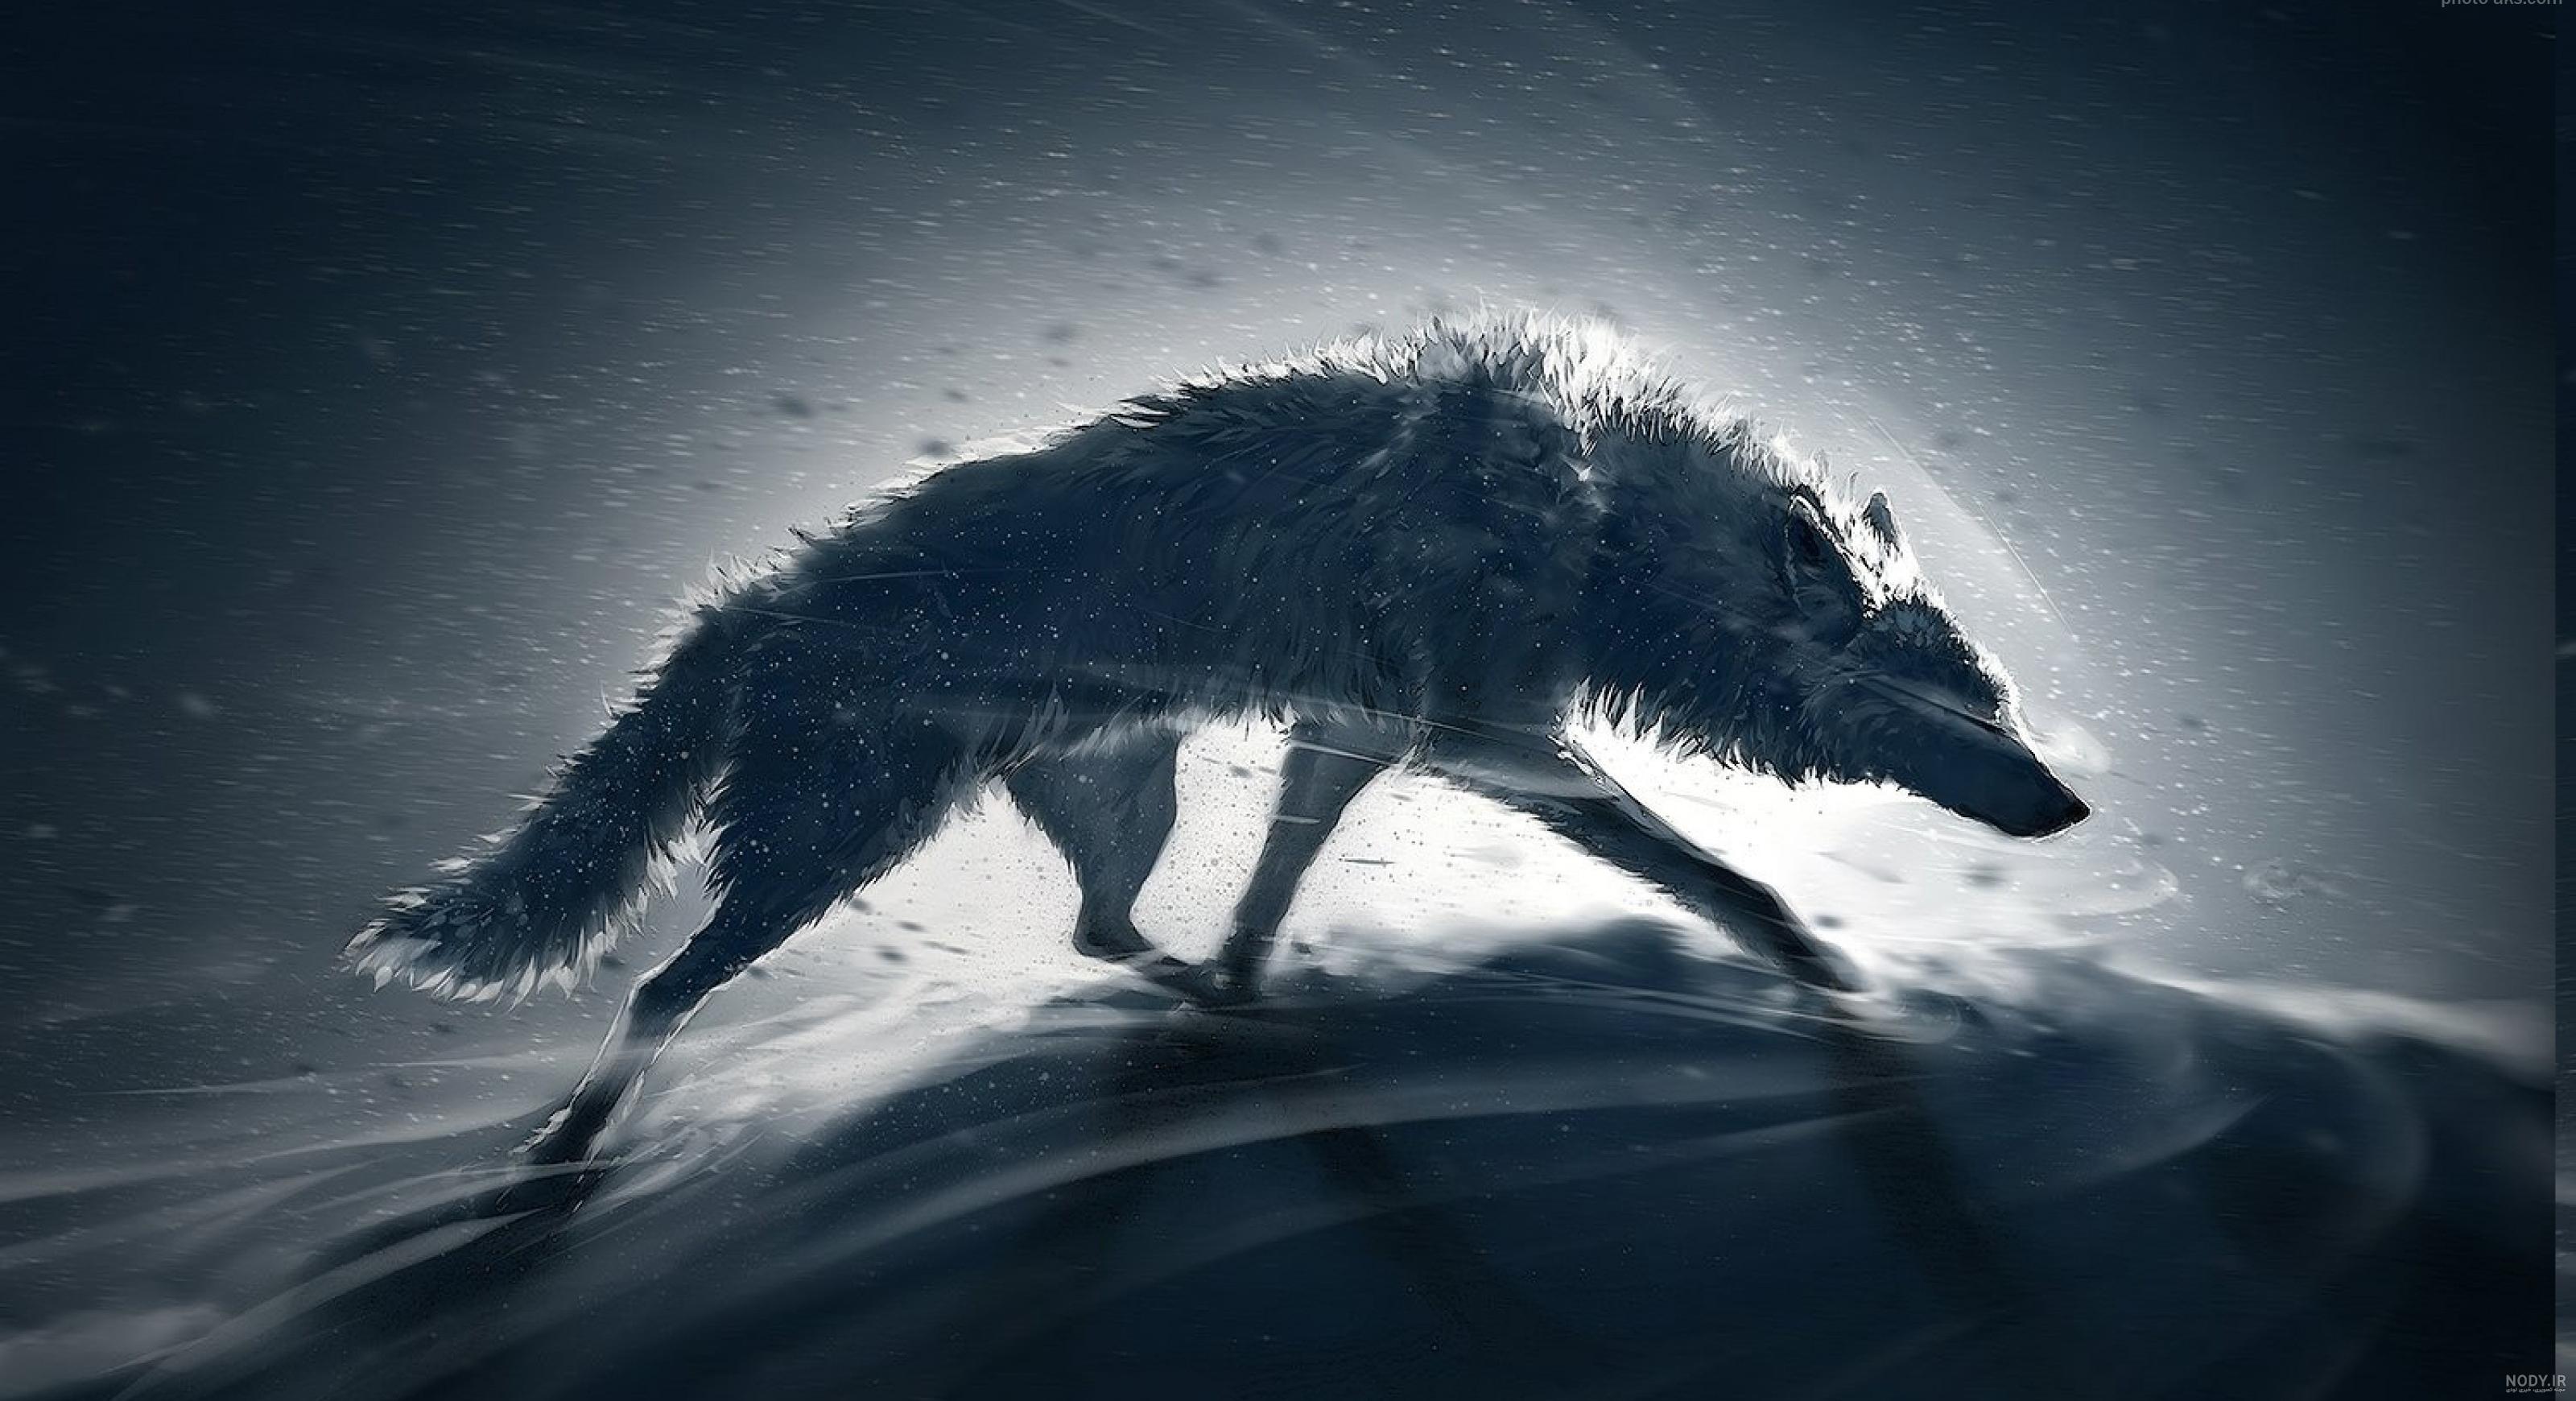 دانلود عکس گرگ سیاه وحشی